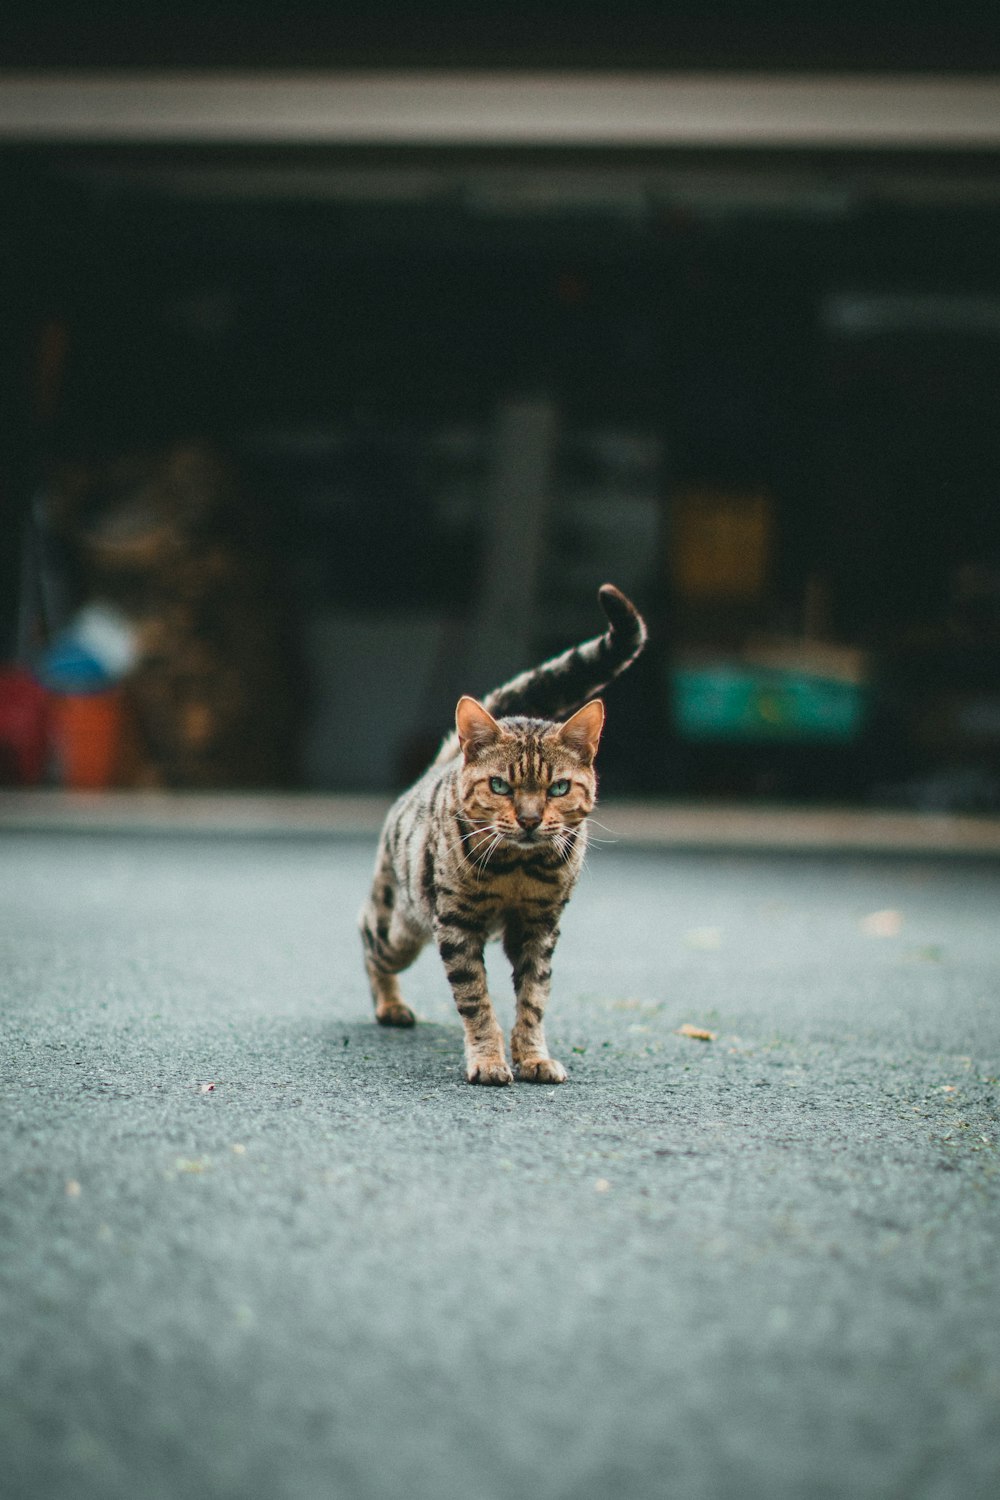 차고 옆 길을 가로질러 걷는 고양이